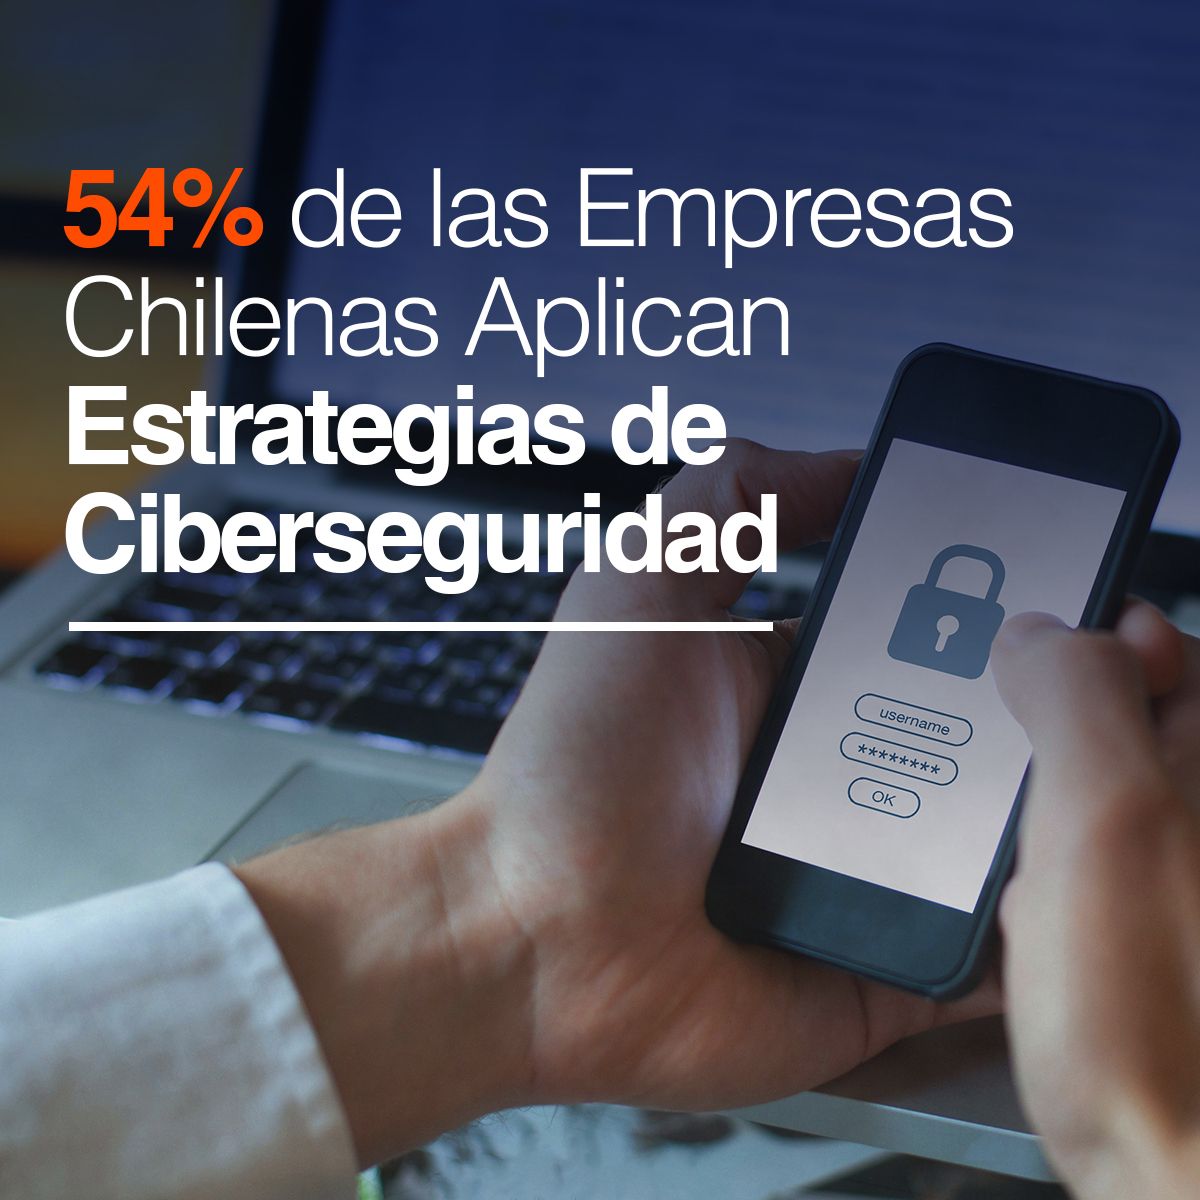 54% de las Empresas Chilenas Aplican Estrategias de Ciberseguridad